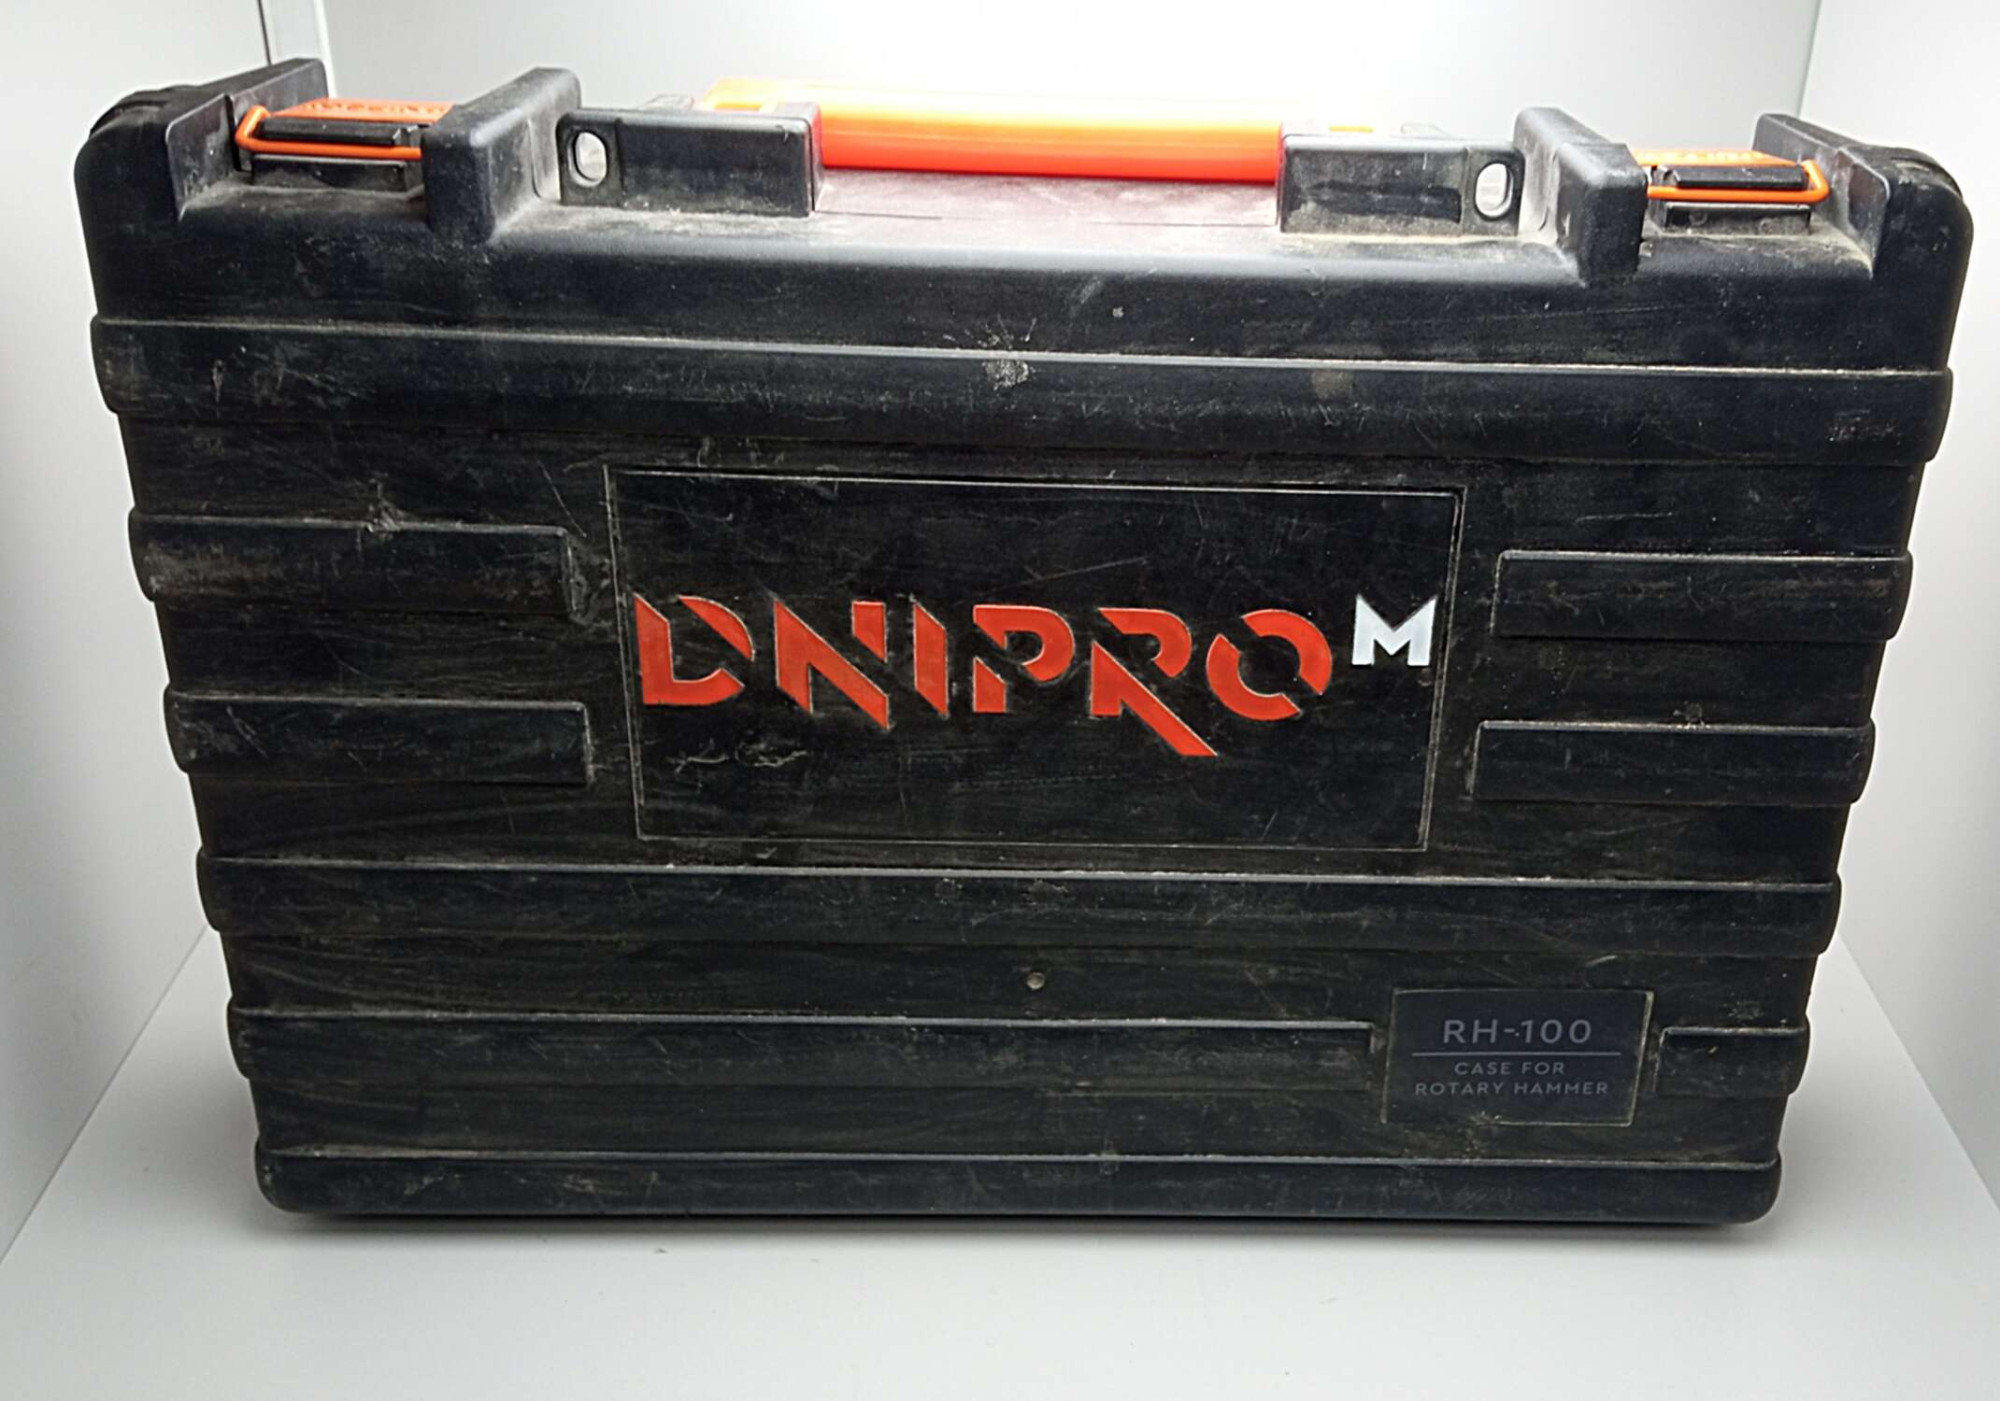 Перфоратор Dnipro-M RH-100 1